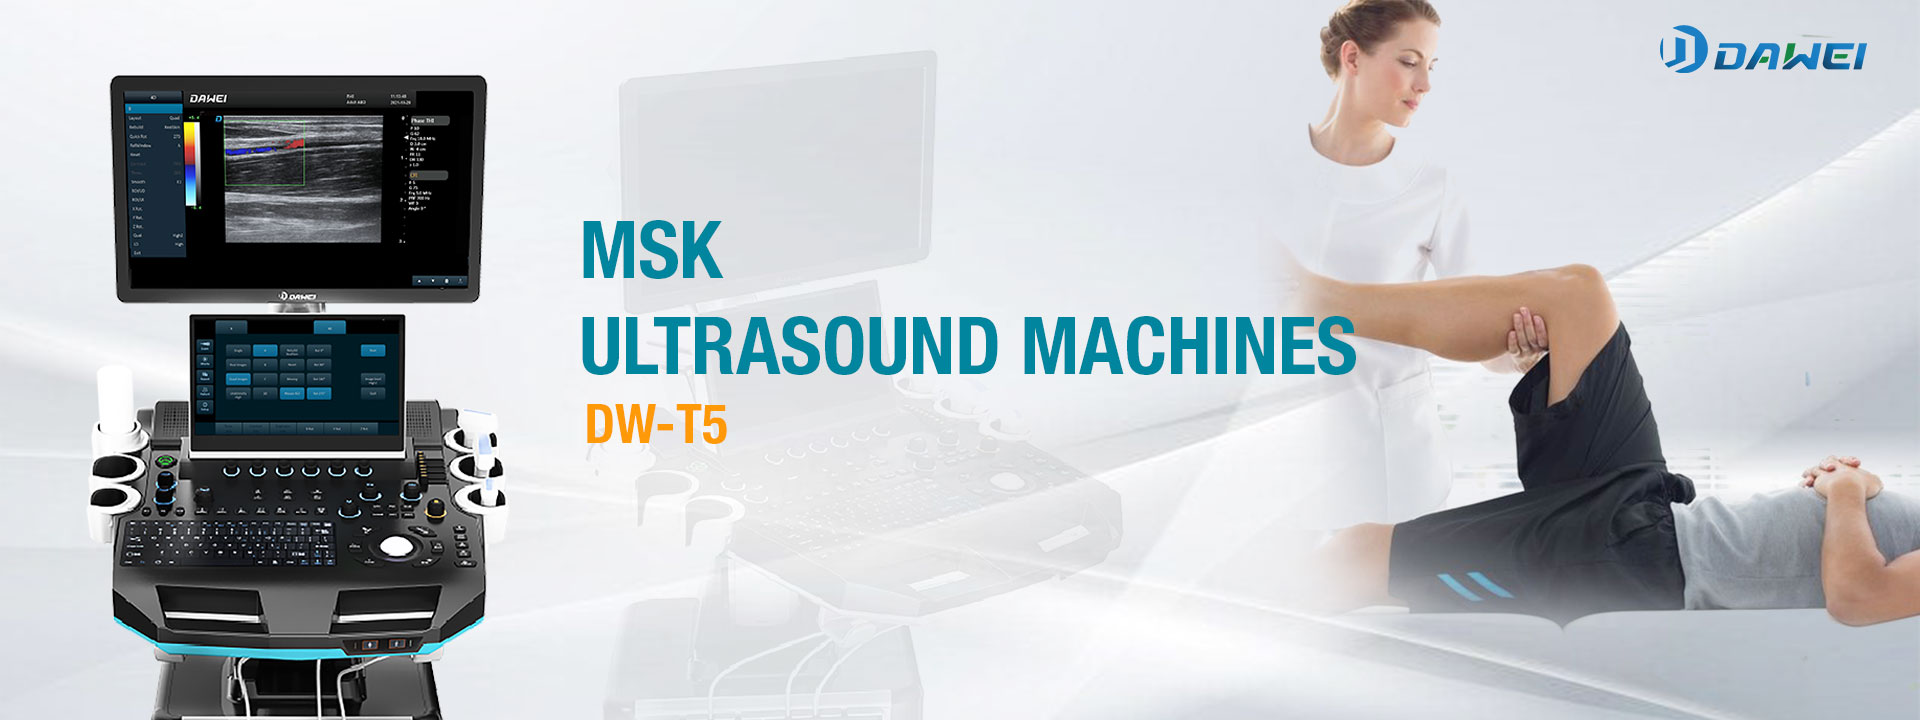 Avances en el diagnóstico con máquinas de ultrasonido MSK